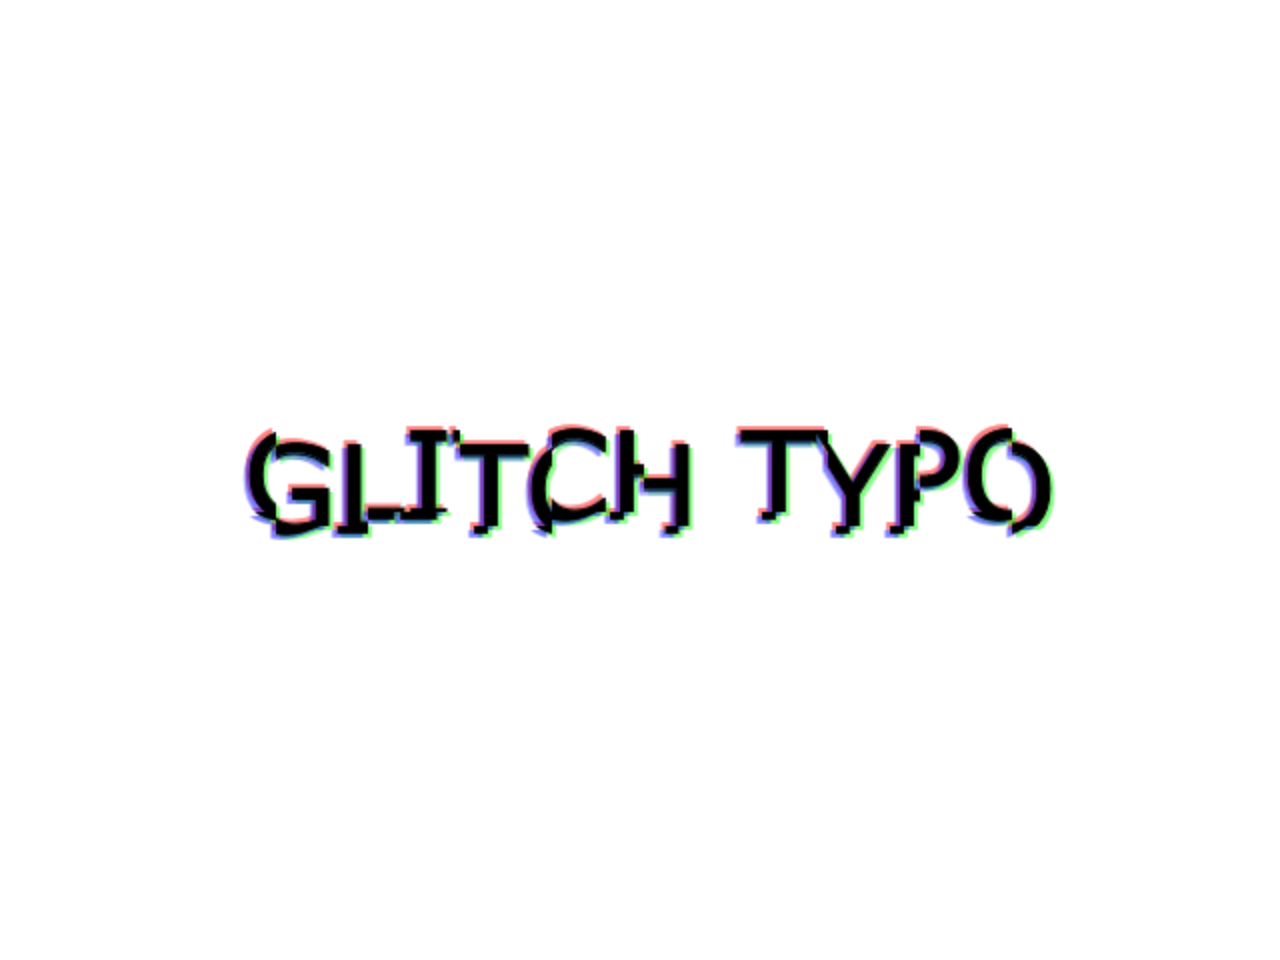 Glitch Text Generator - Write in Glitch Text - Capitalize My Title